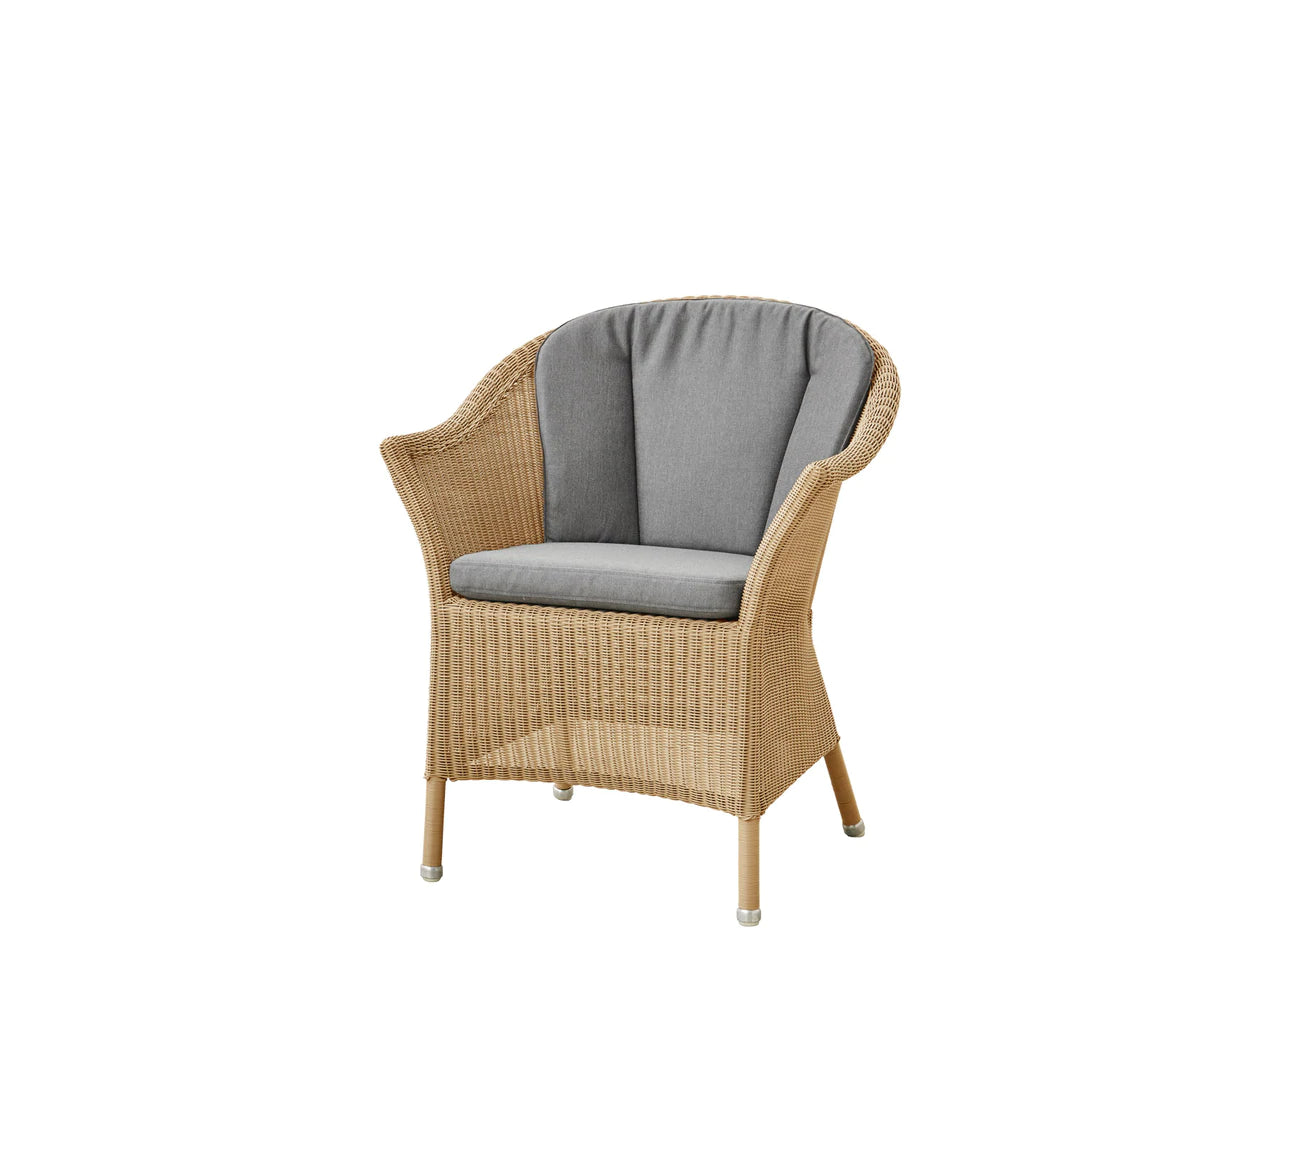 Cane-Line Lansing Stuhl, graue Sitz- und Rückenpolster